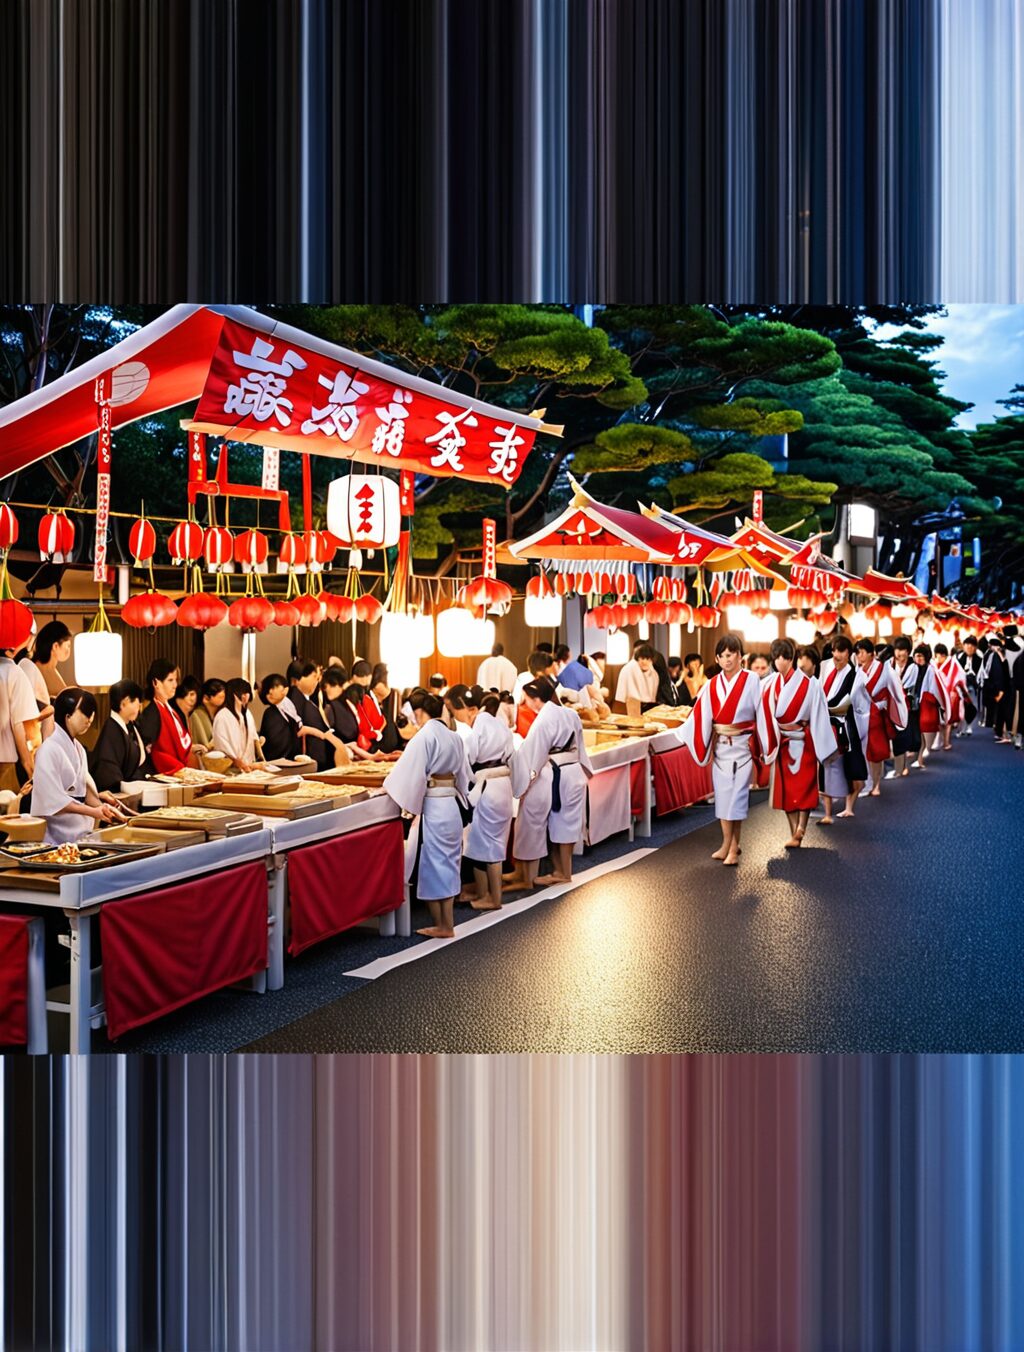 japan food matsuri photos